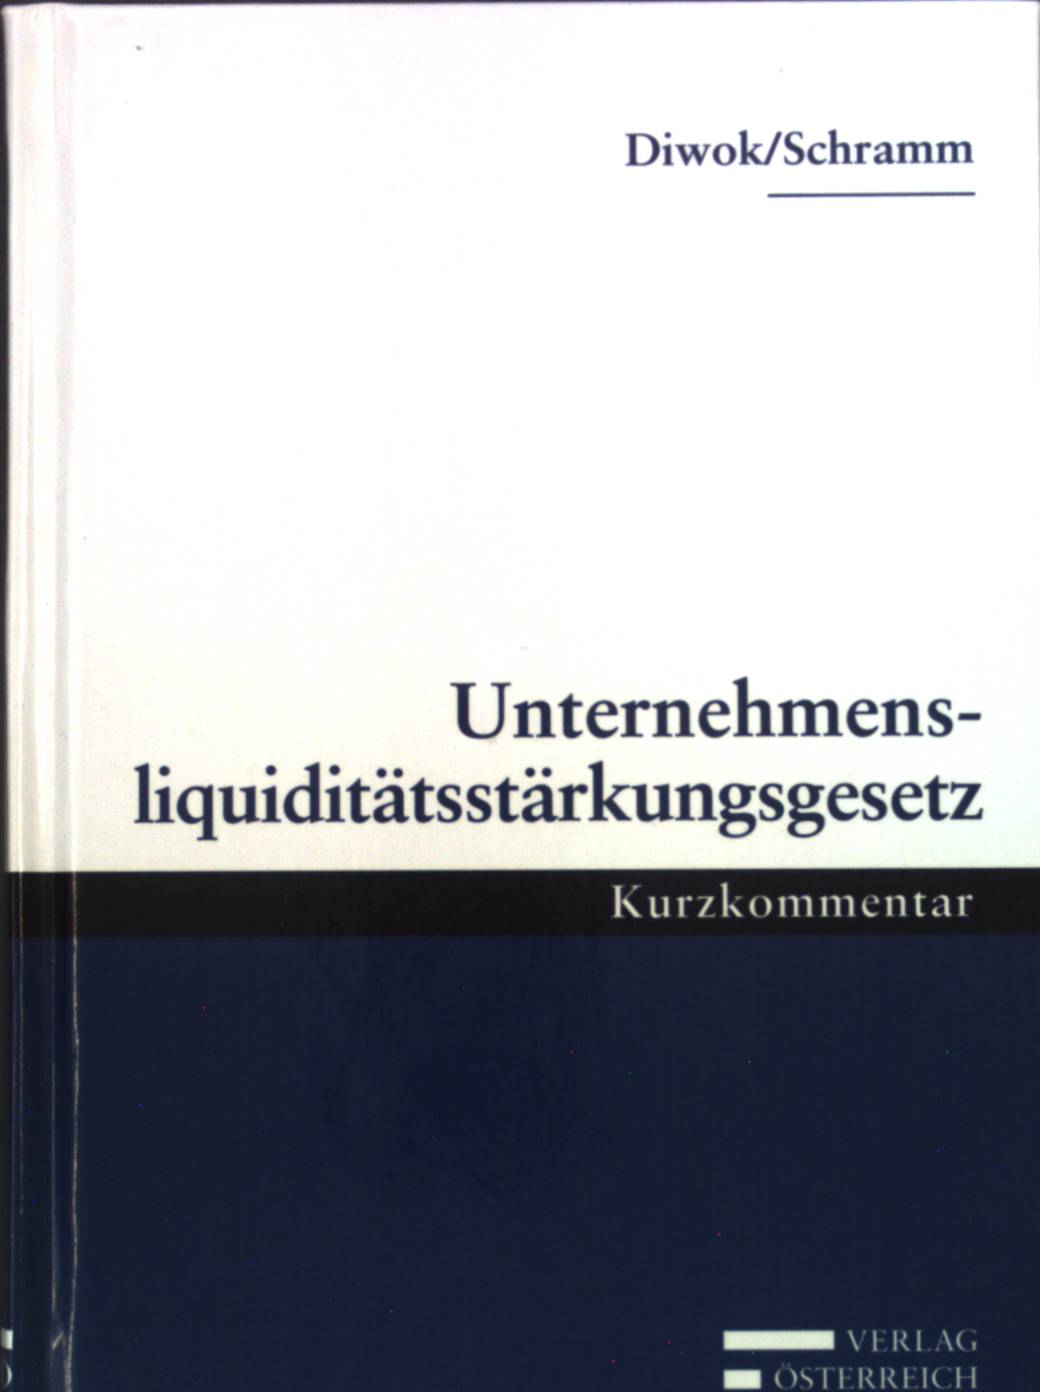 Unternehmensliquiditätsstärkungsgesetz (2010) : [Kurzkommentar]. - Diwok, Georg und Alfred Schramm